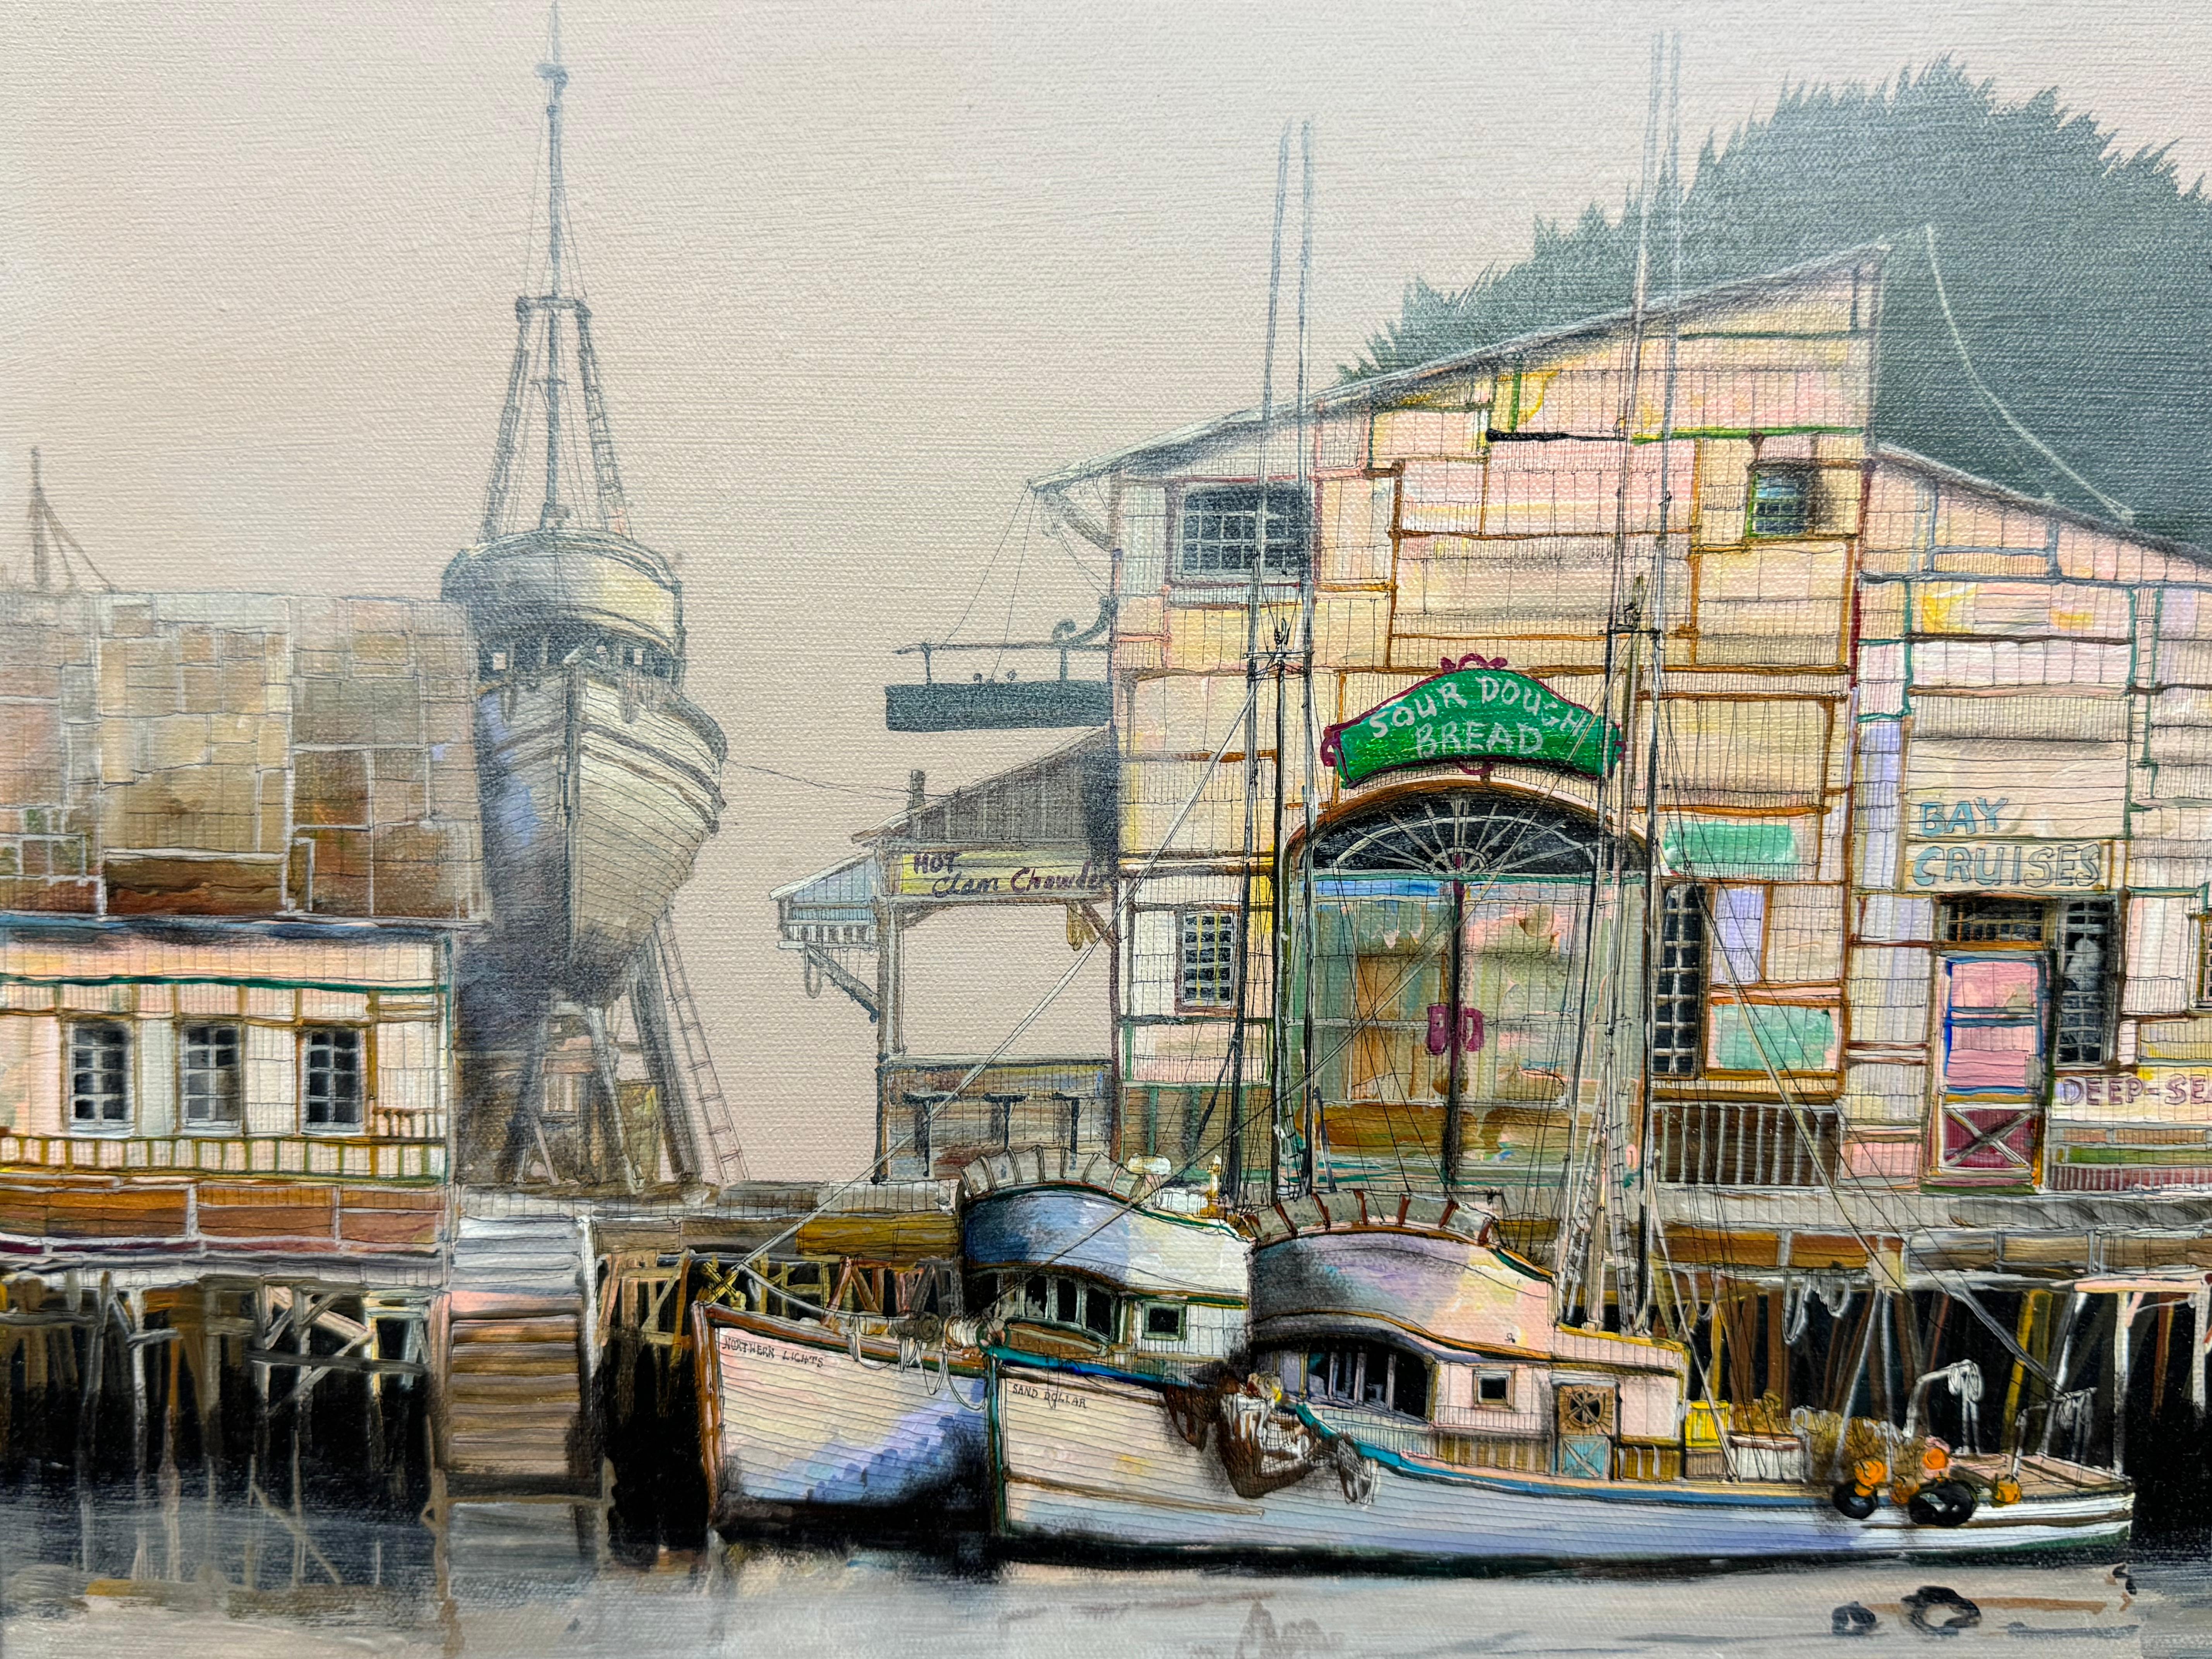 Patricia Sedlak California wharf painting

1984

Acrylic on canvas

35 x 40 unframed, 30.5 x 40.5 framed